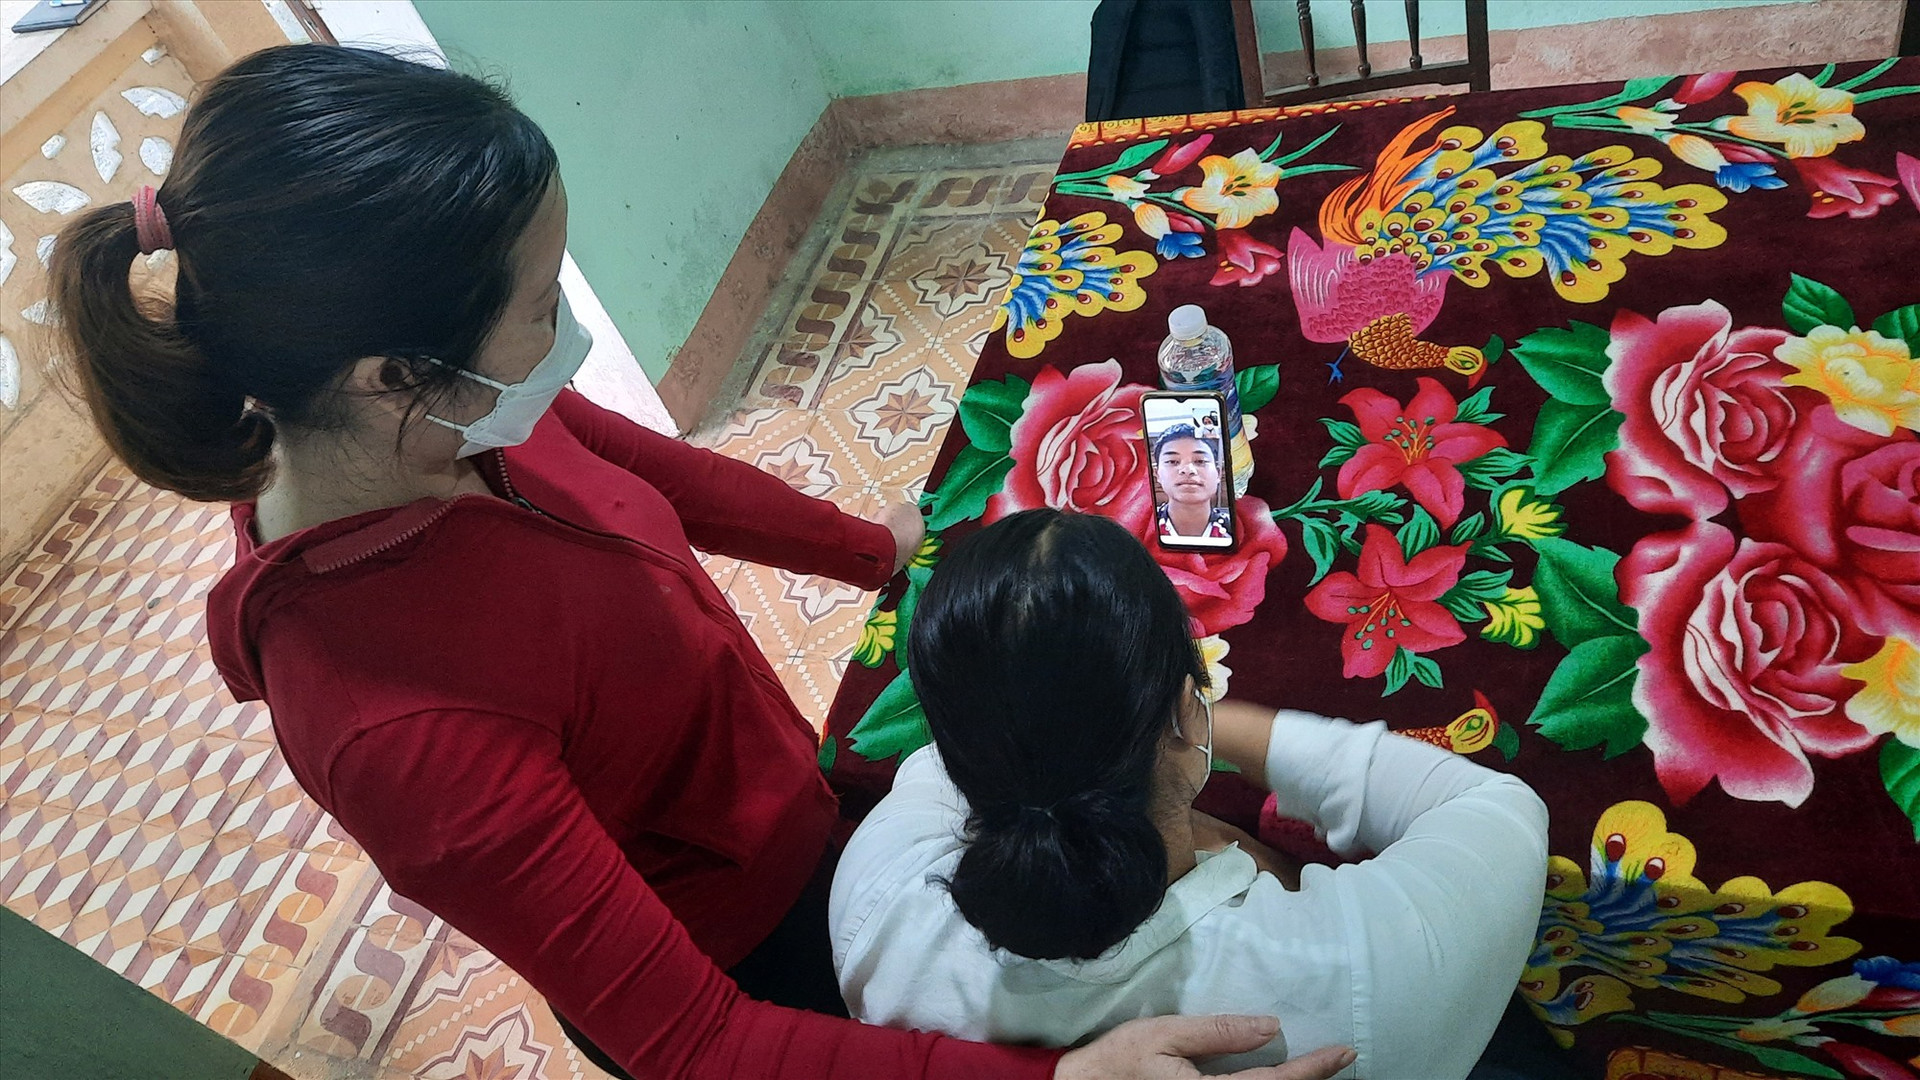 Hồ Văn Thận (người trên màn hình điện thoại) – đang học ngoại ngữ ở Hà Nội để sang Đức du học nói chuyện với các cô giáo từng nuôi nấng mình.